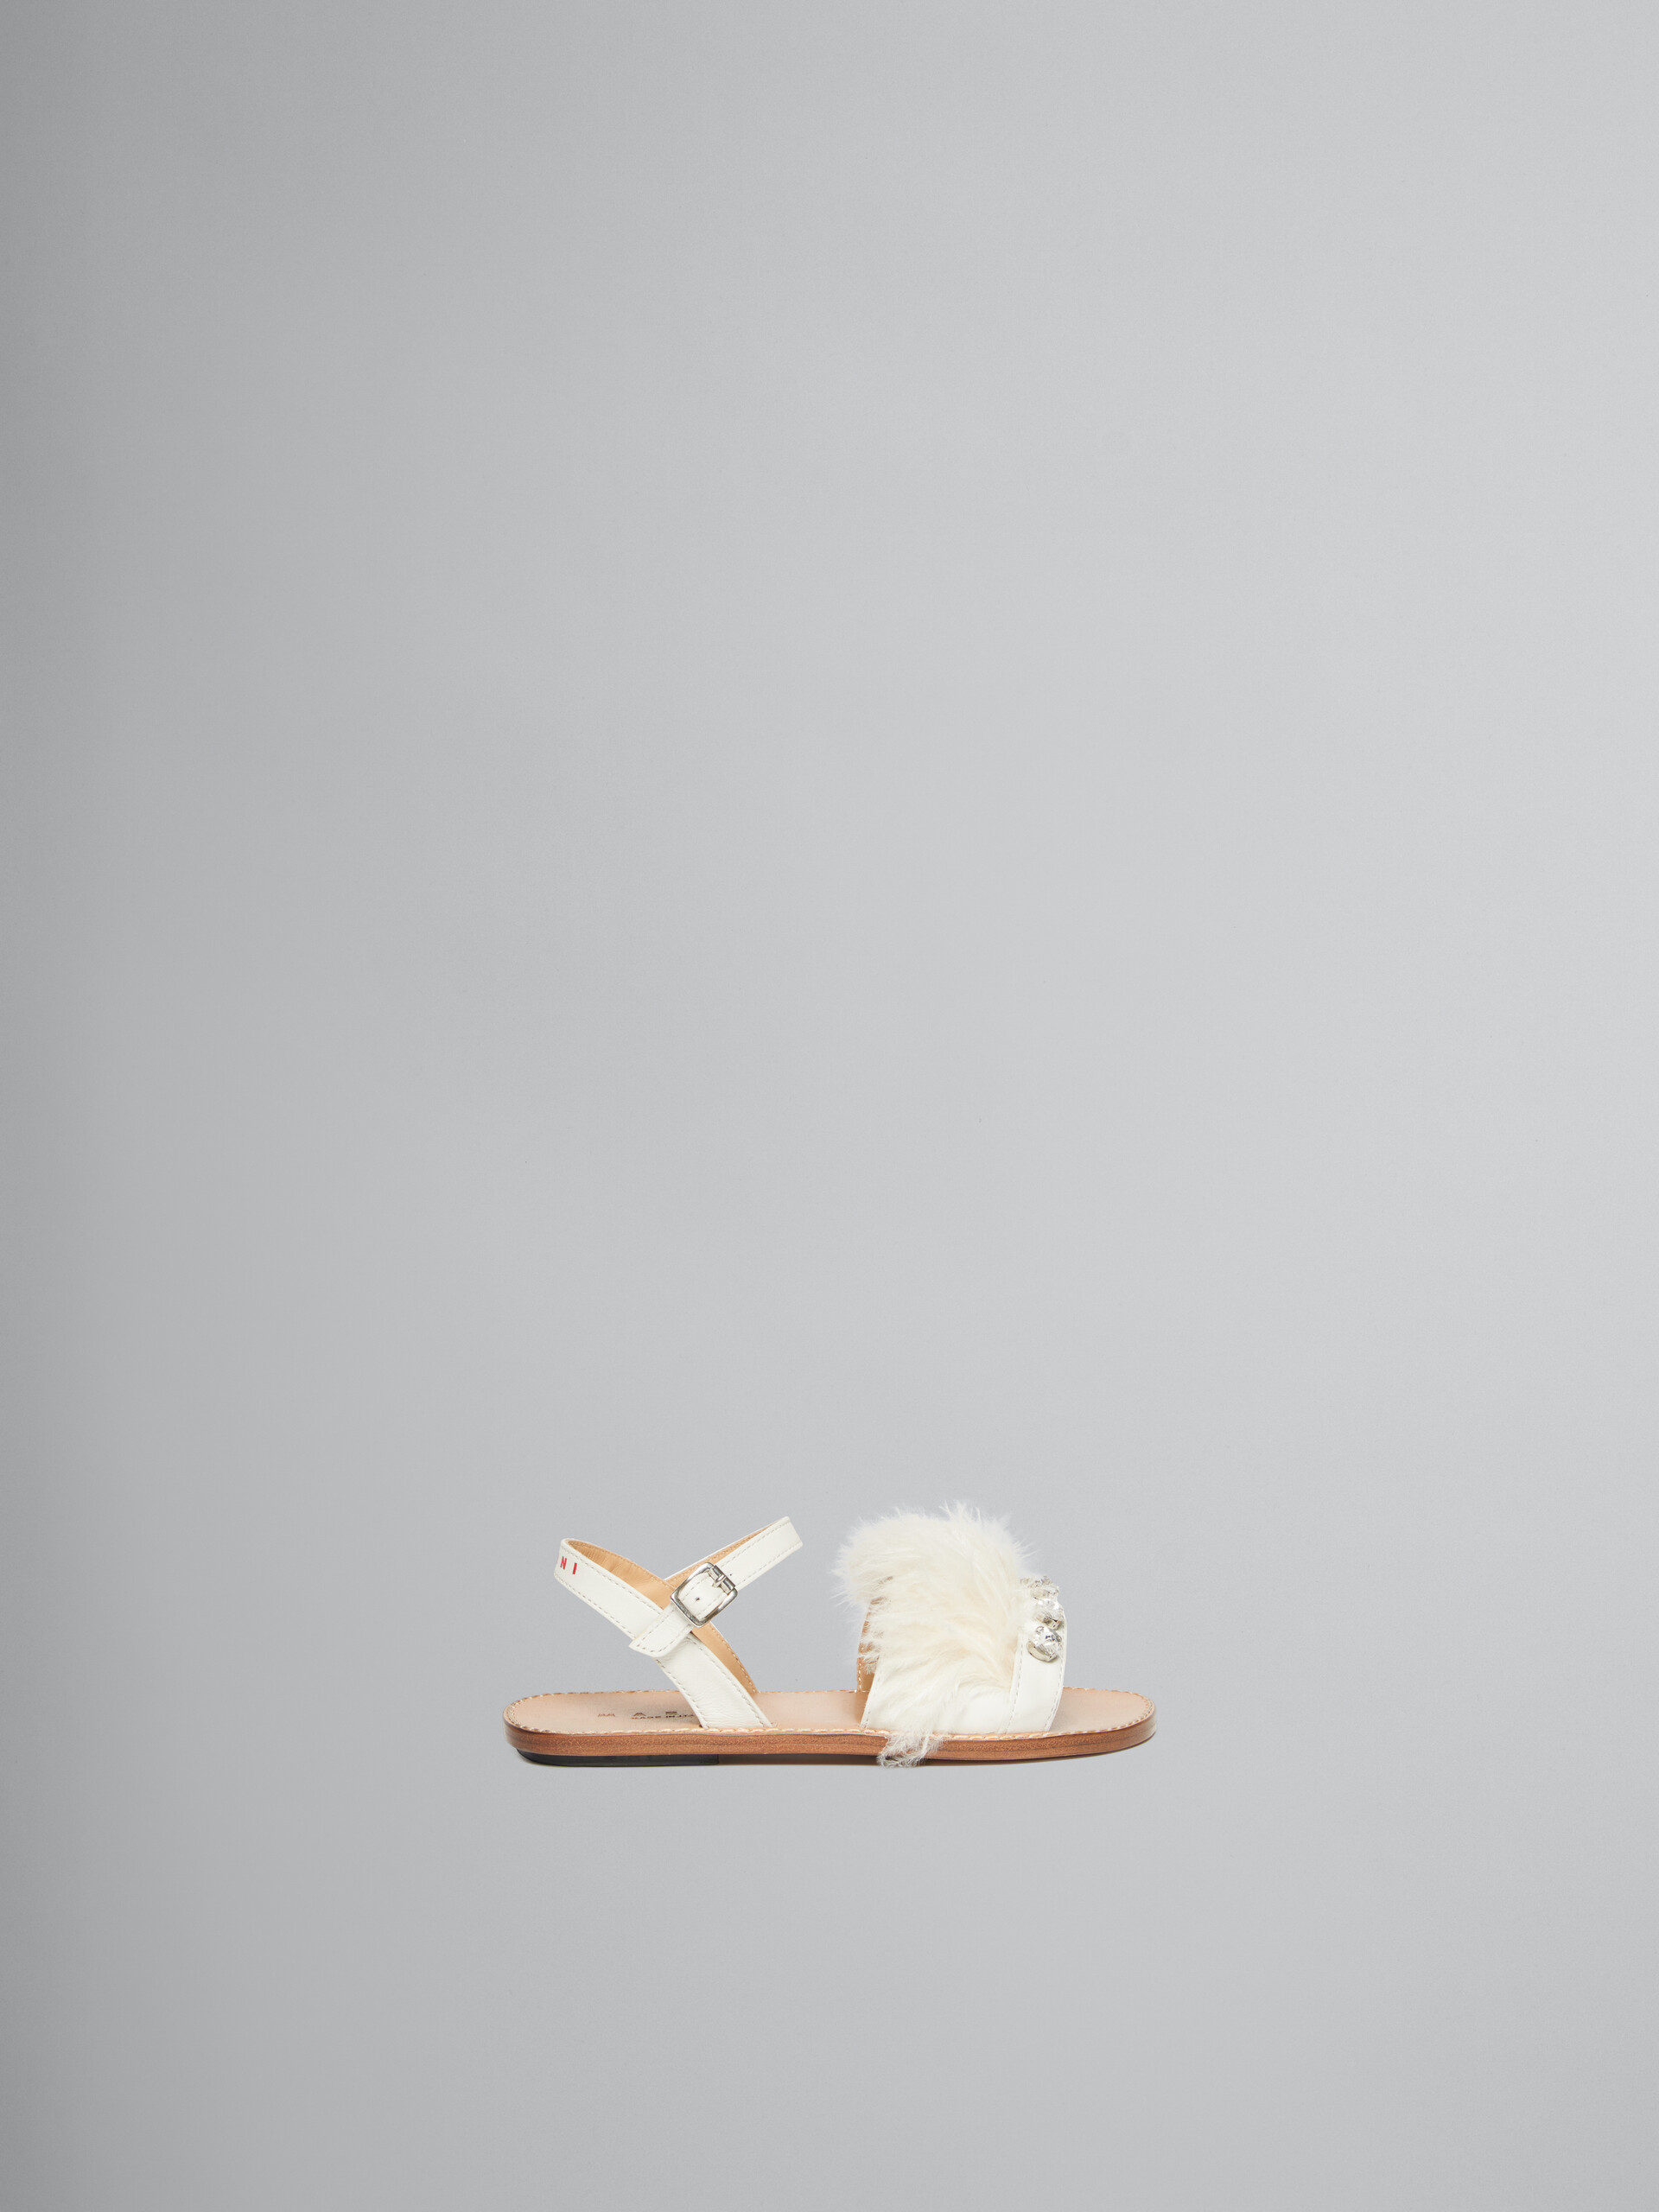 Sandales Marabou à plume blanche - ENFANT - Image 1